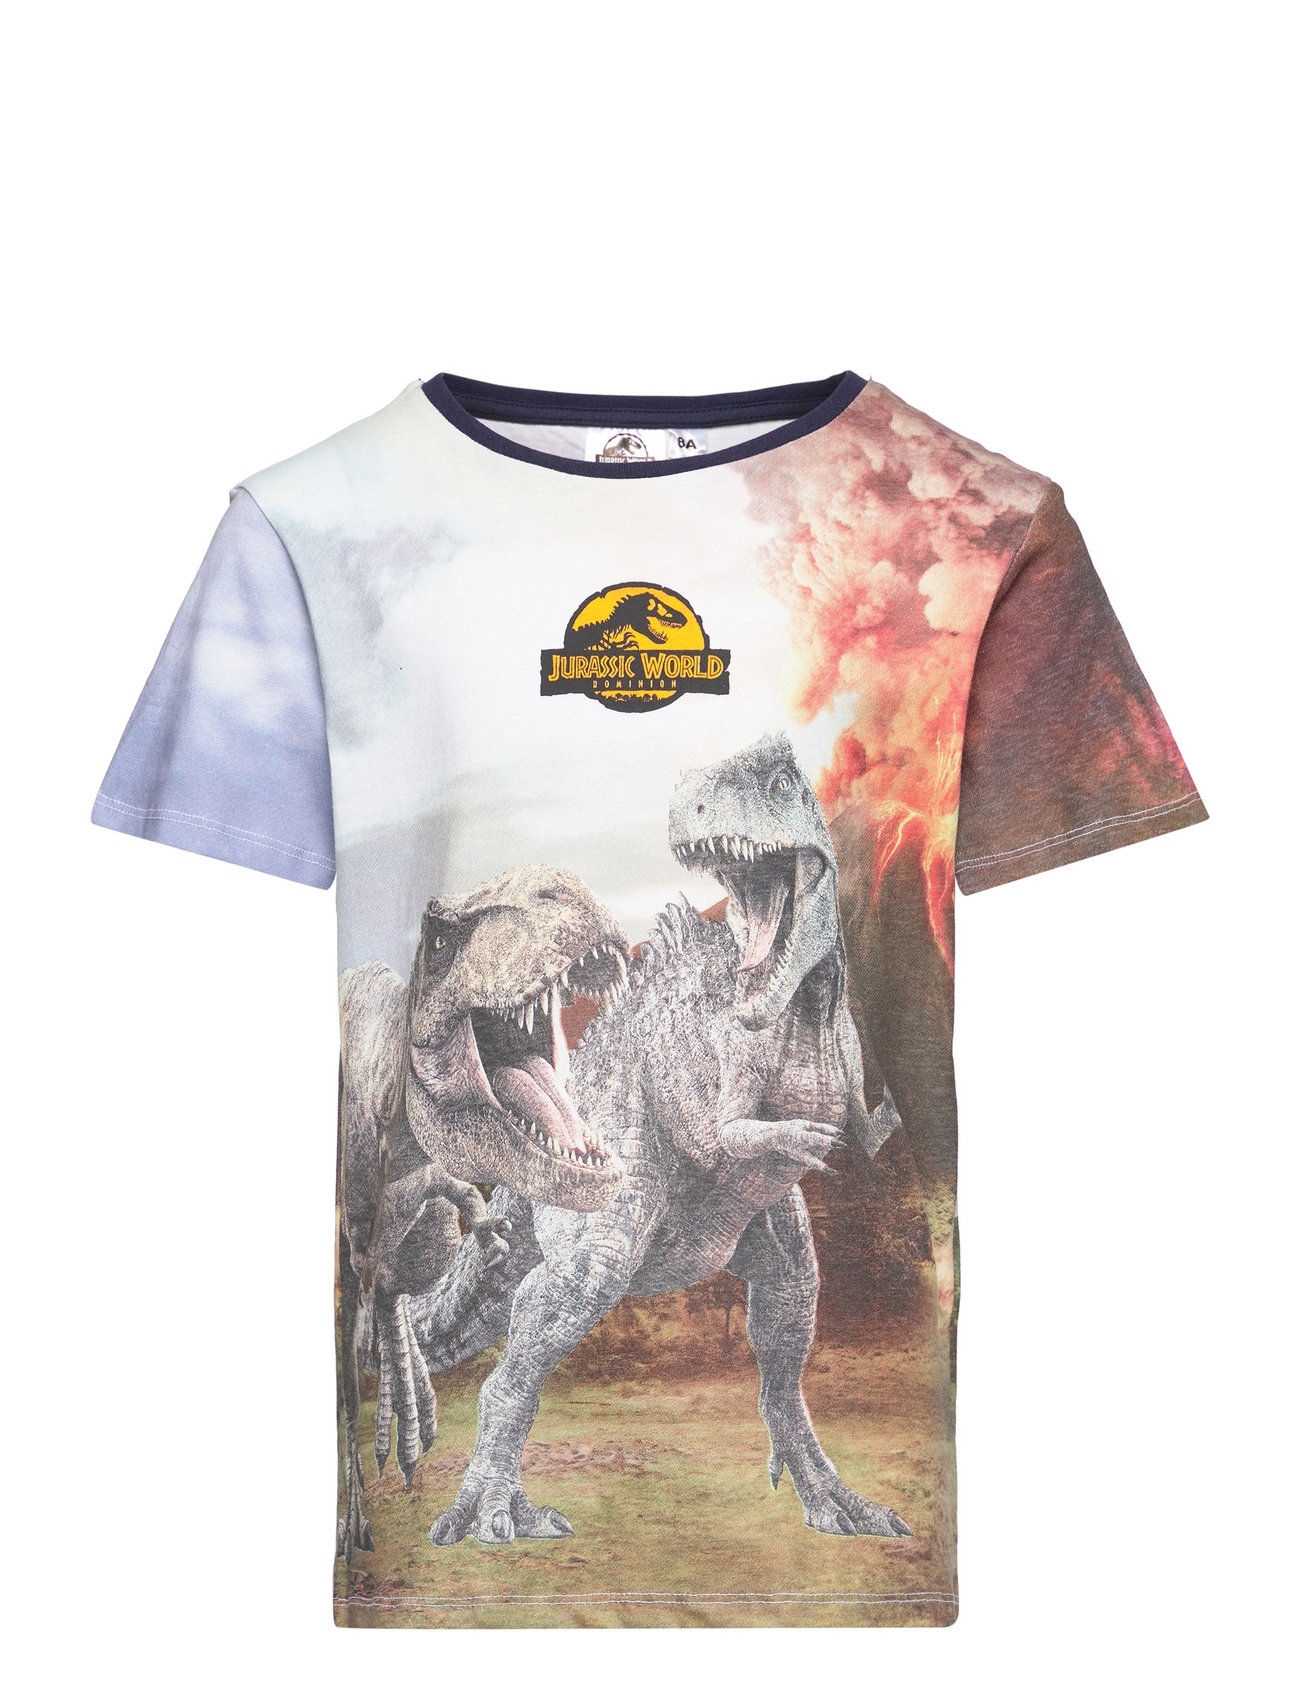 "Jurassic World" "Short-Sleeved T-Shirt Tops T-Kortærmet Skjorte Multi/patterned Jurassic